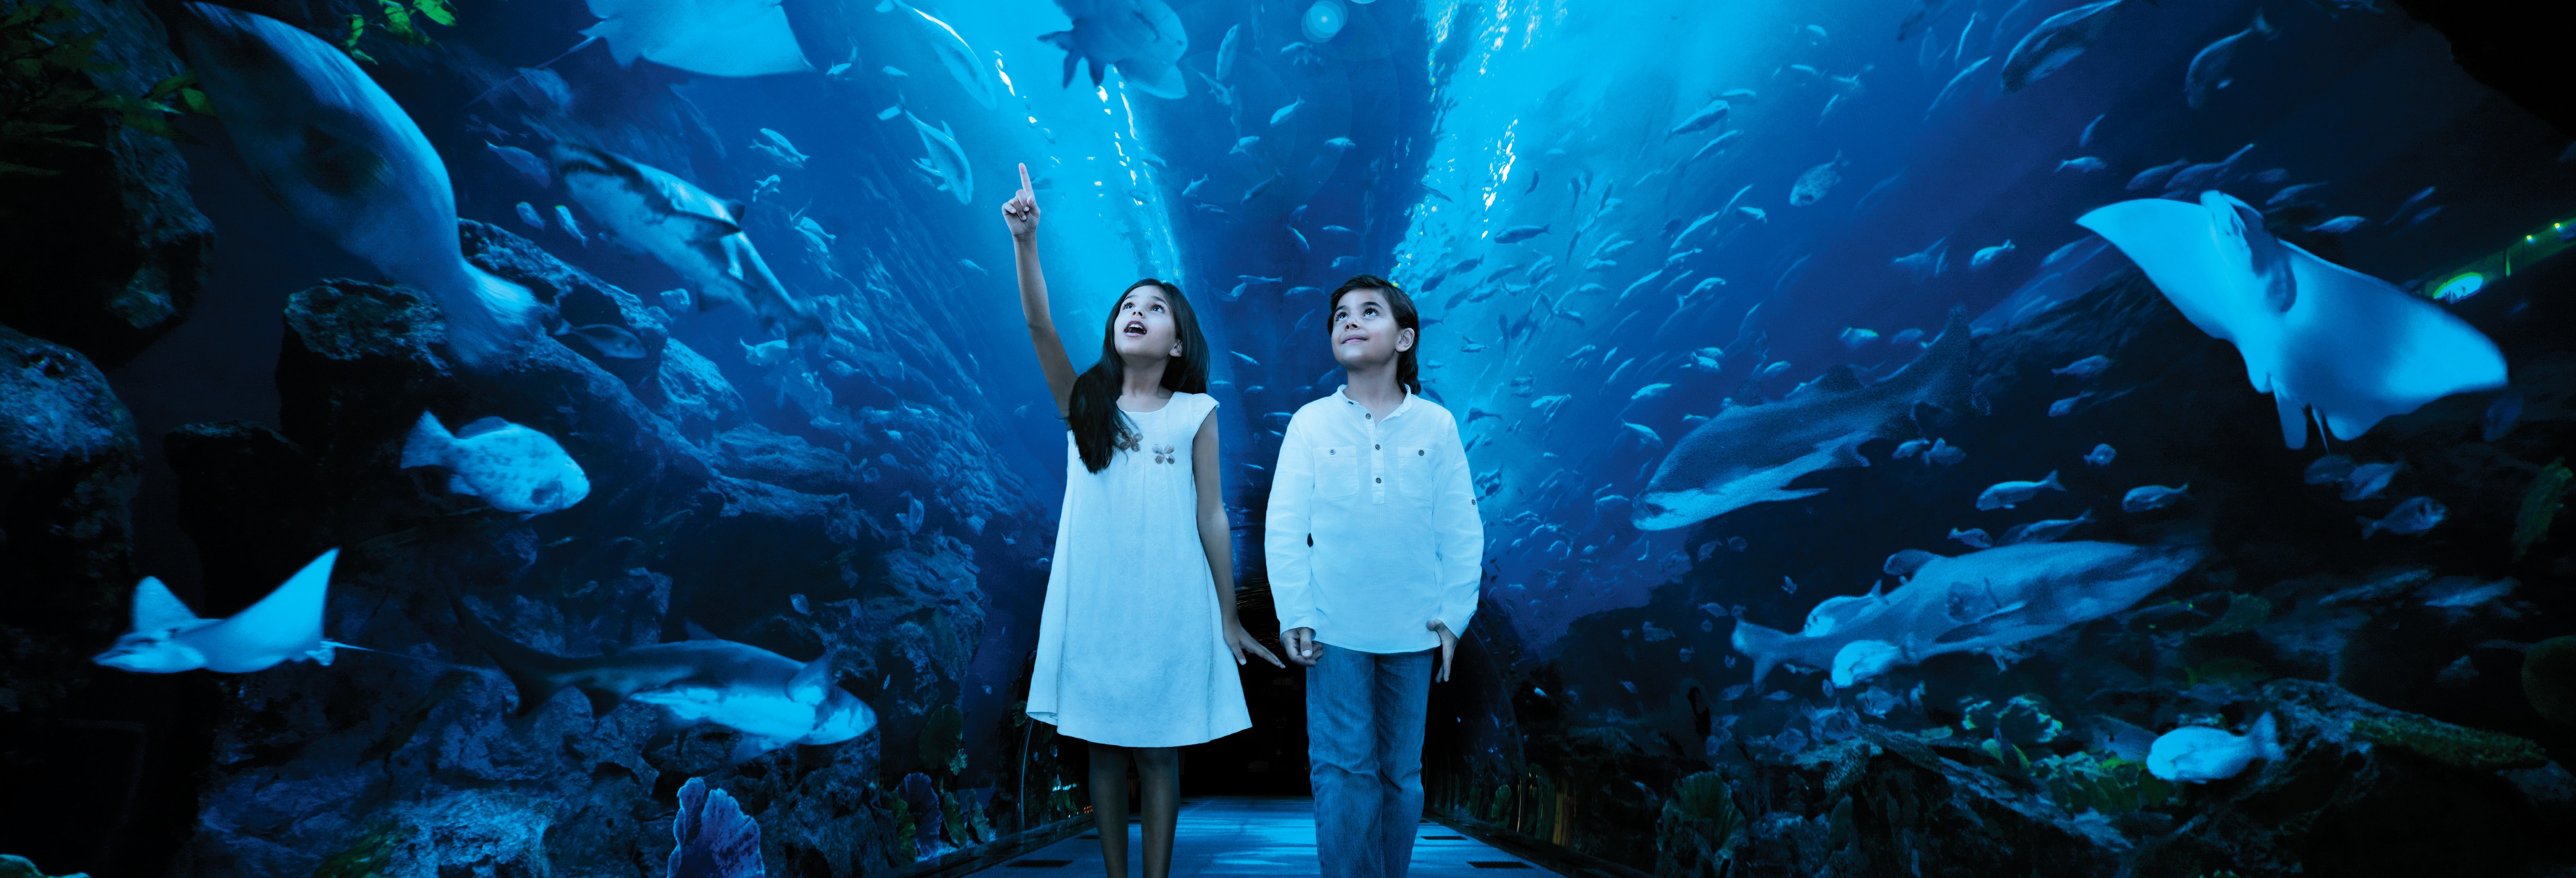 Ingresso do Dubai Aquarium